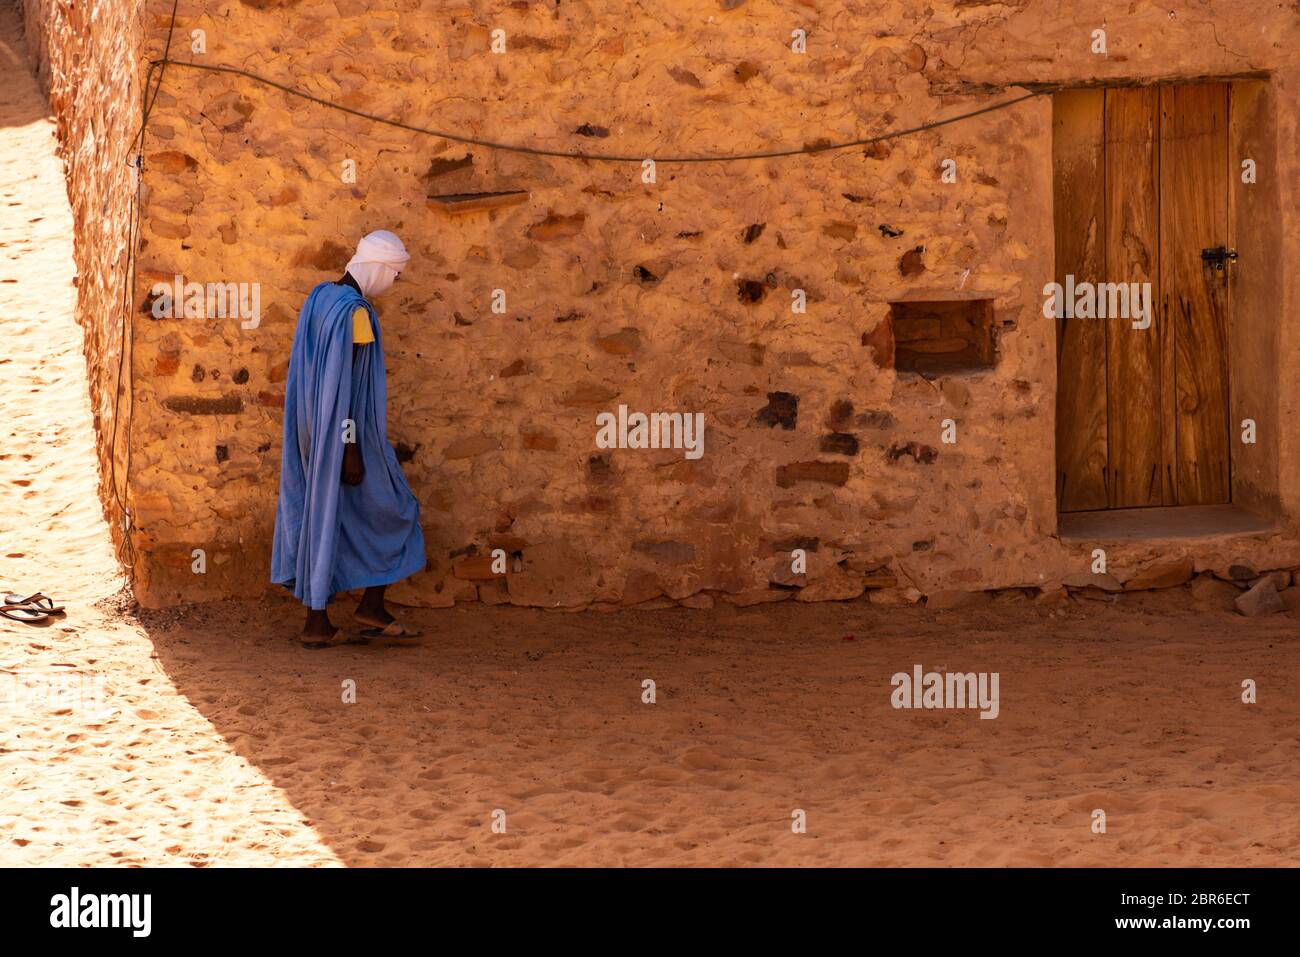 Afrique, ville ancienne, robe traditionnelle bleue, Chinguetti, images en couleur, photo horizontale, Mauritanie, mauritanie, patrimoine mauritanien, mauritanie Banque D'Images